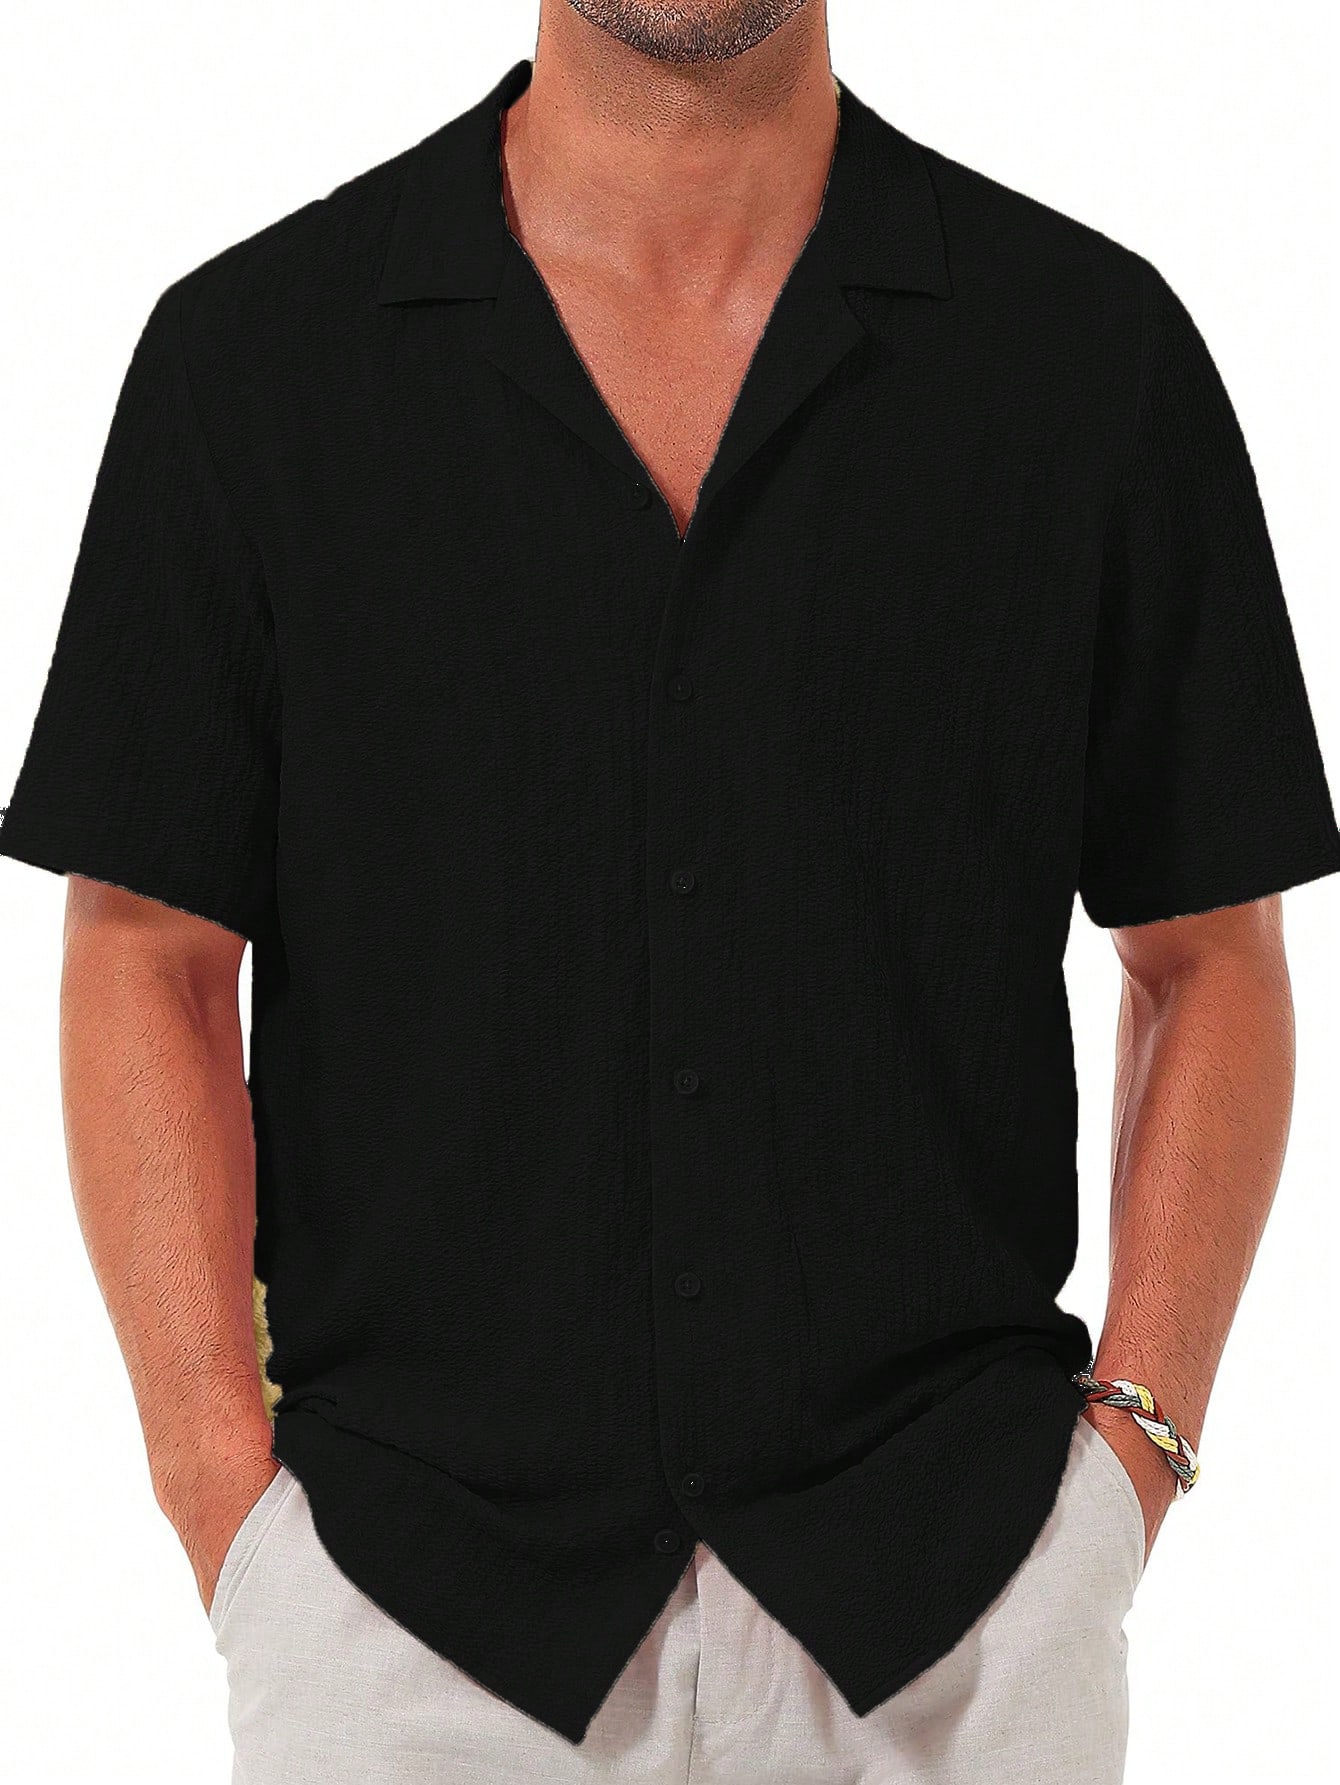 Мужская повседневная рубашка с коротким рукавом на пуговицах, черный рубашка мужская с коротким рукавом цифровым принтом на пуговицах повседневная домашняя одежда лето